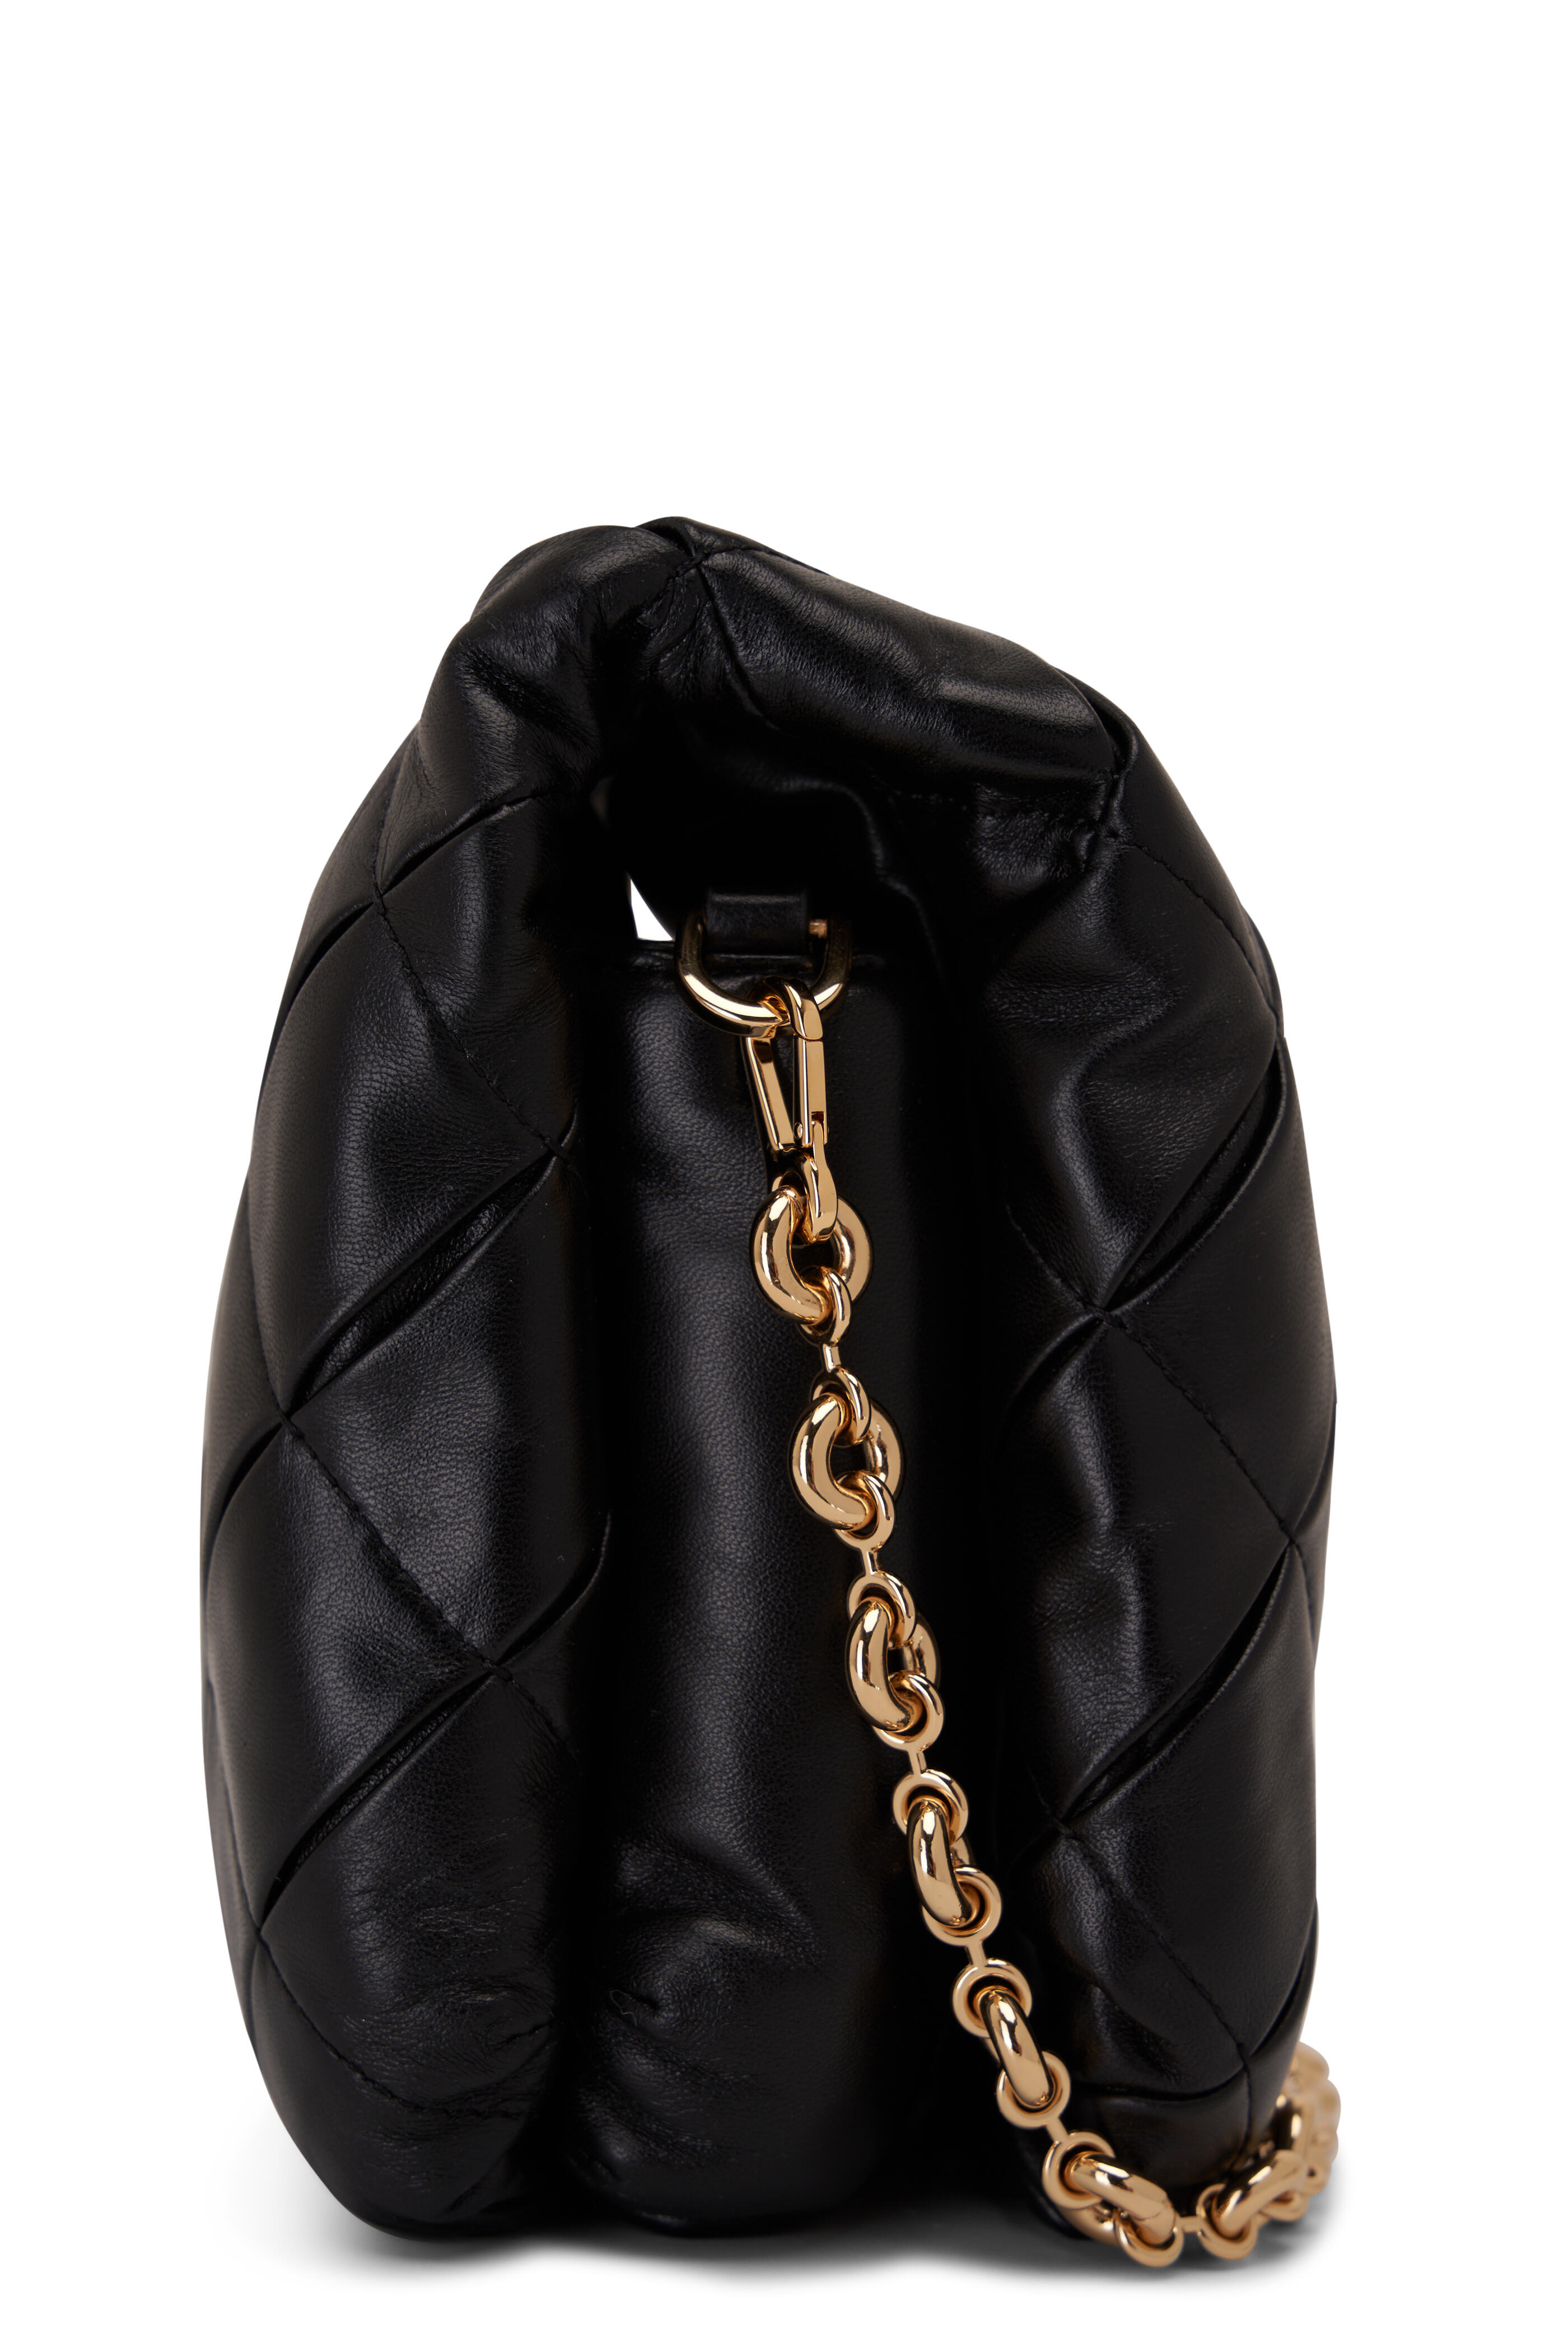 LOEWE Puffer Goya Shoulder Bag Black in Shiny Nappa Lambskin